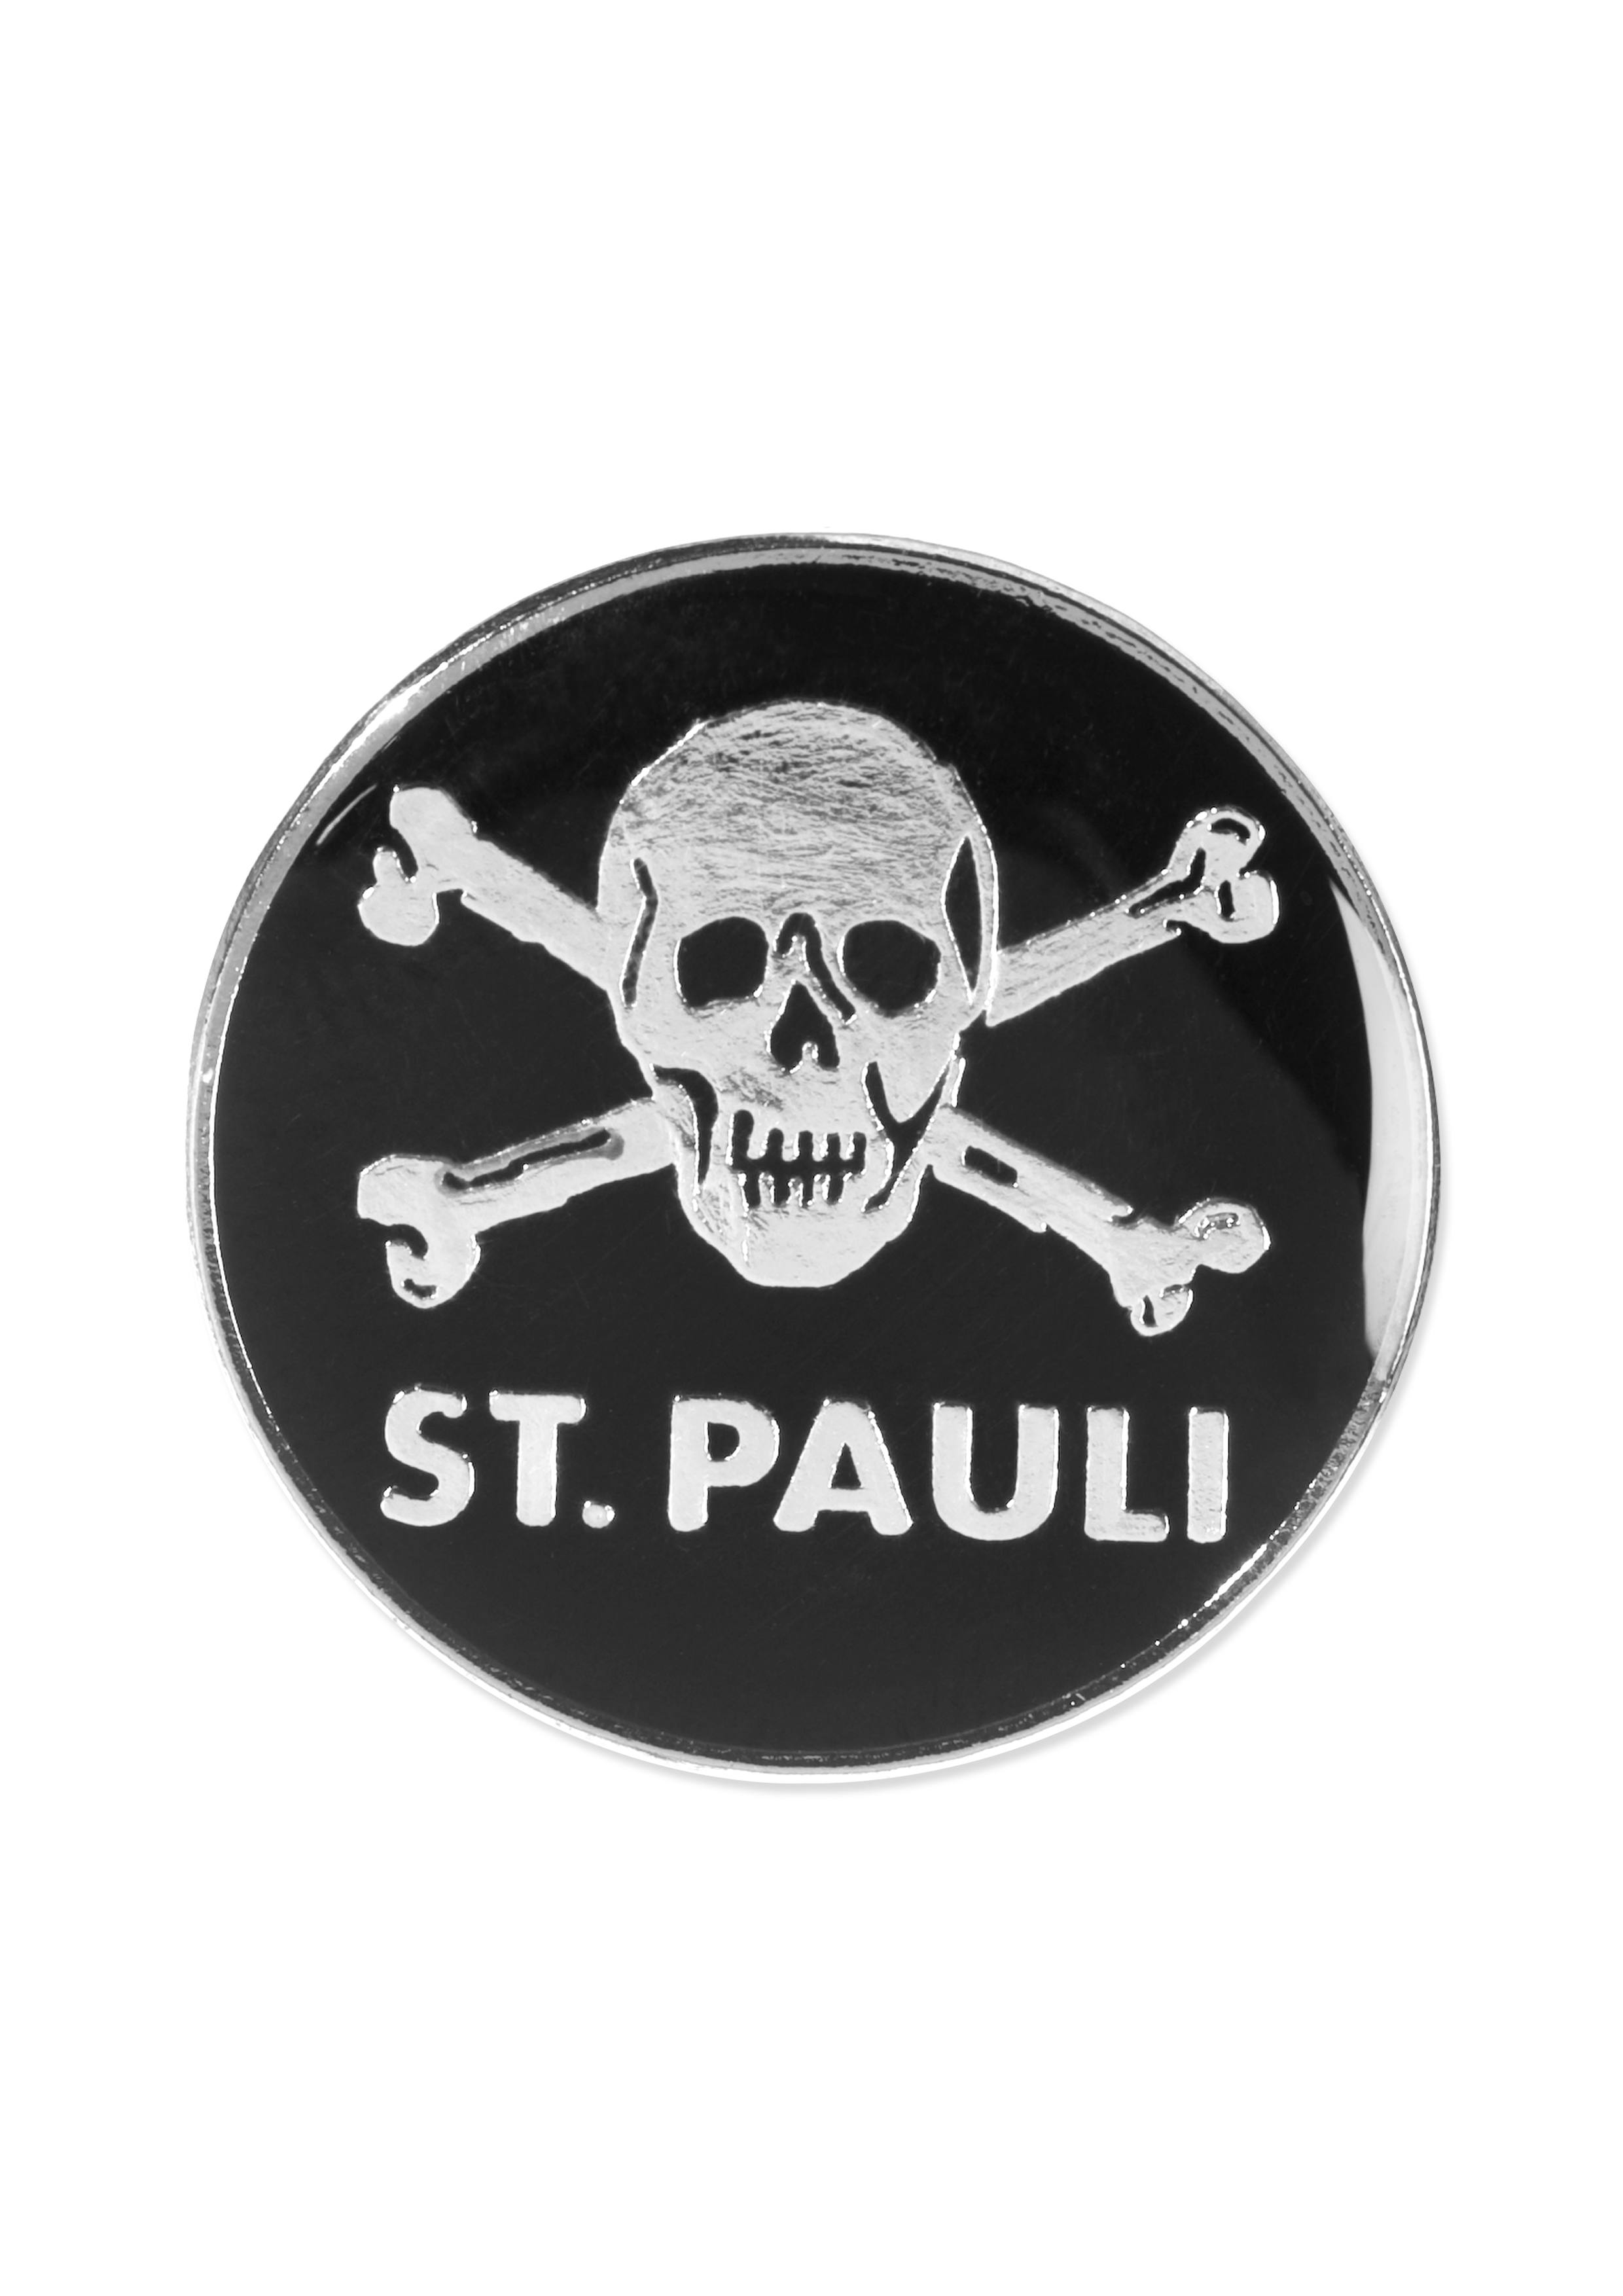 Skull and crossbones pin